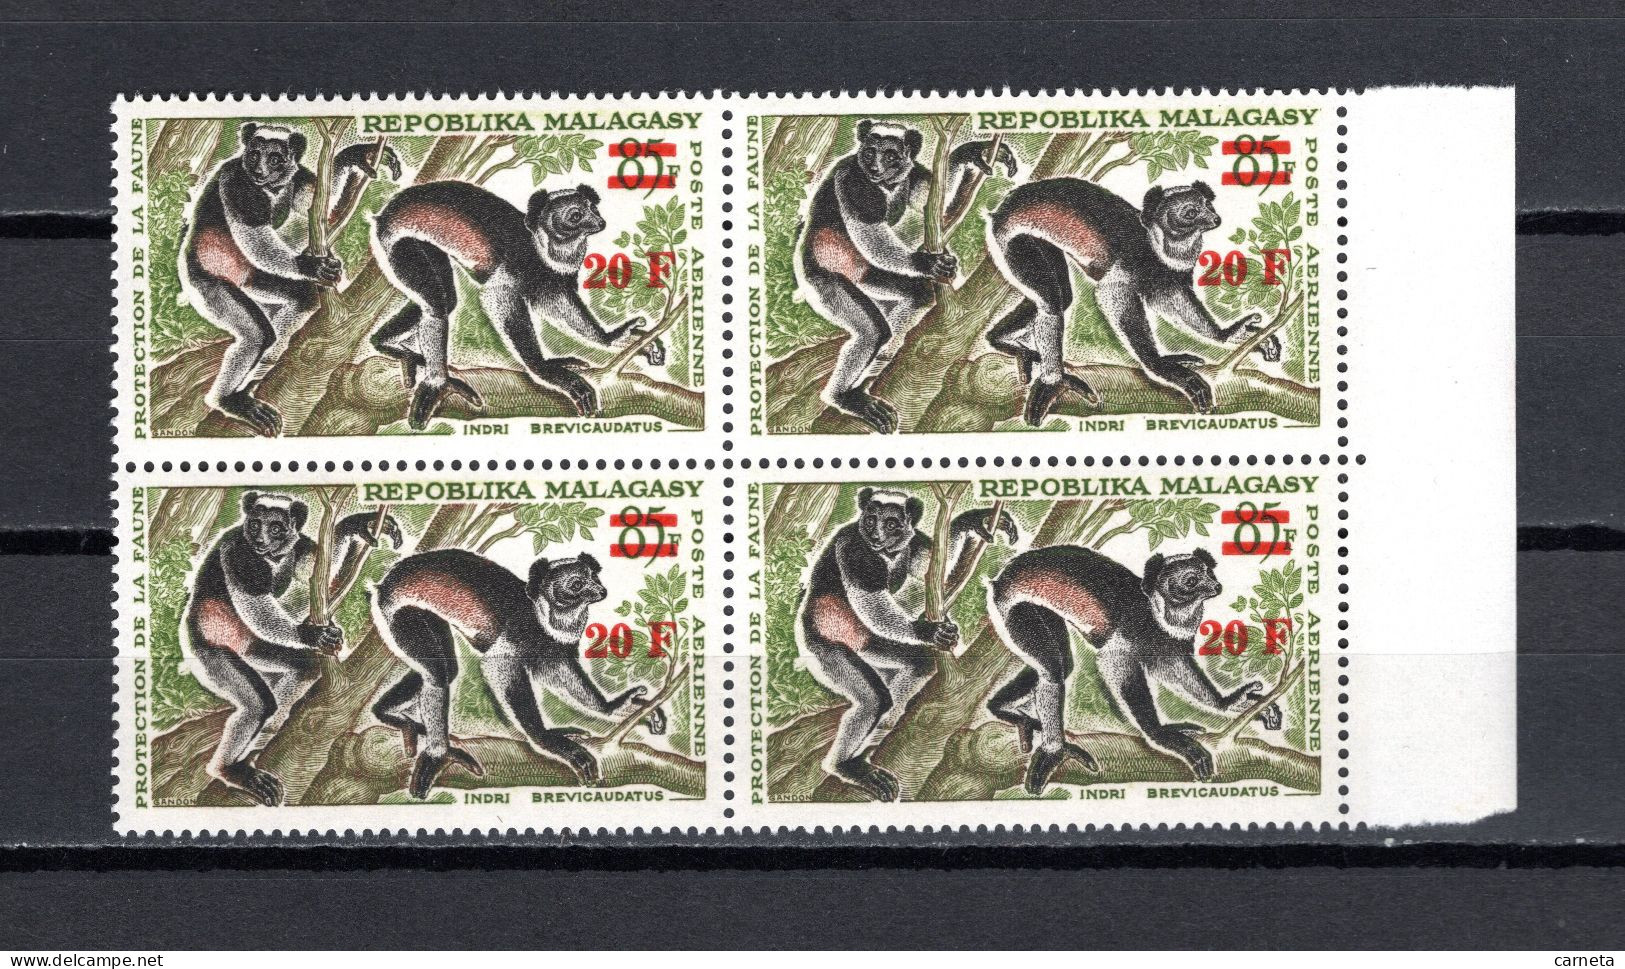 MADAGASCAR  PA  N° 106  BLOC DE QUATRE TIMBRES  NEUF SANS CHARNIERE  COTE 12.00€    ANIMAUX LEMURIEN - Madagascar (1960-...)